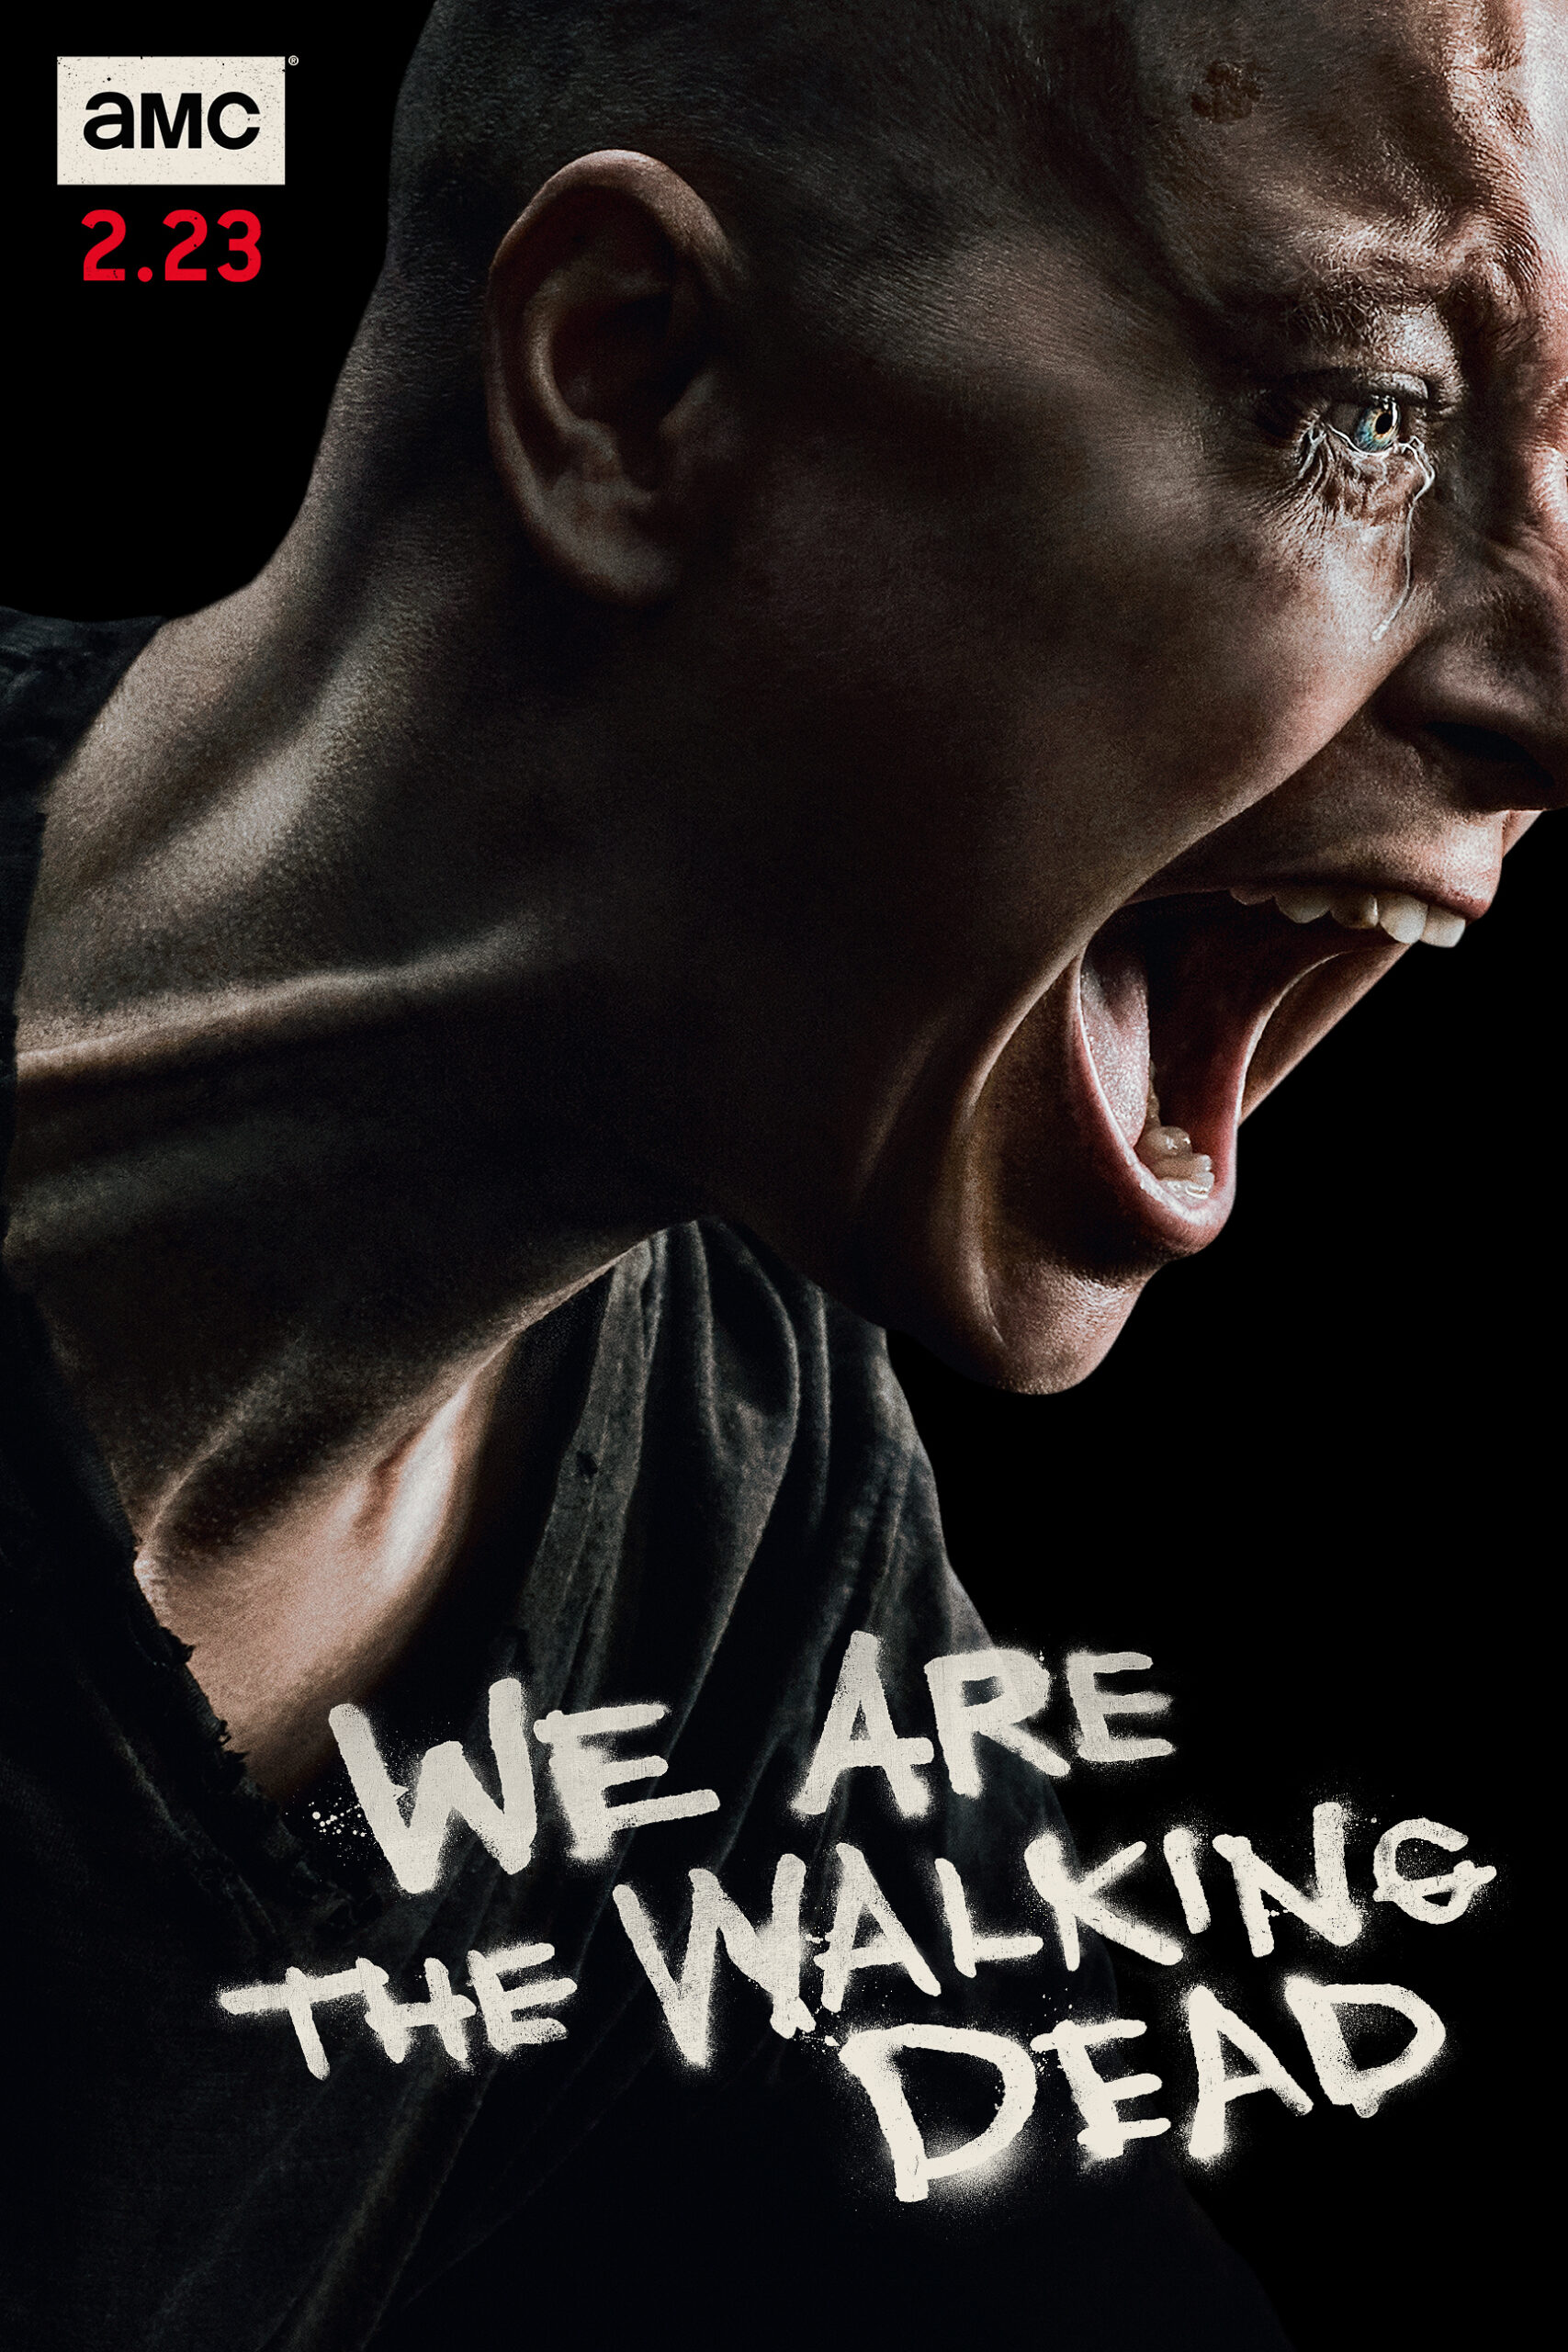 ดูหนังออนไลน์ฟรี The Walking Dead Season 4 EP4 เดอะวอล์กกิงเดด ปี4 ตอนที่4 [[Sub Thai]]